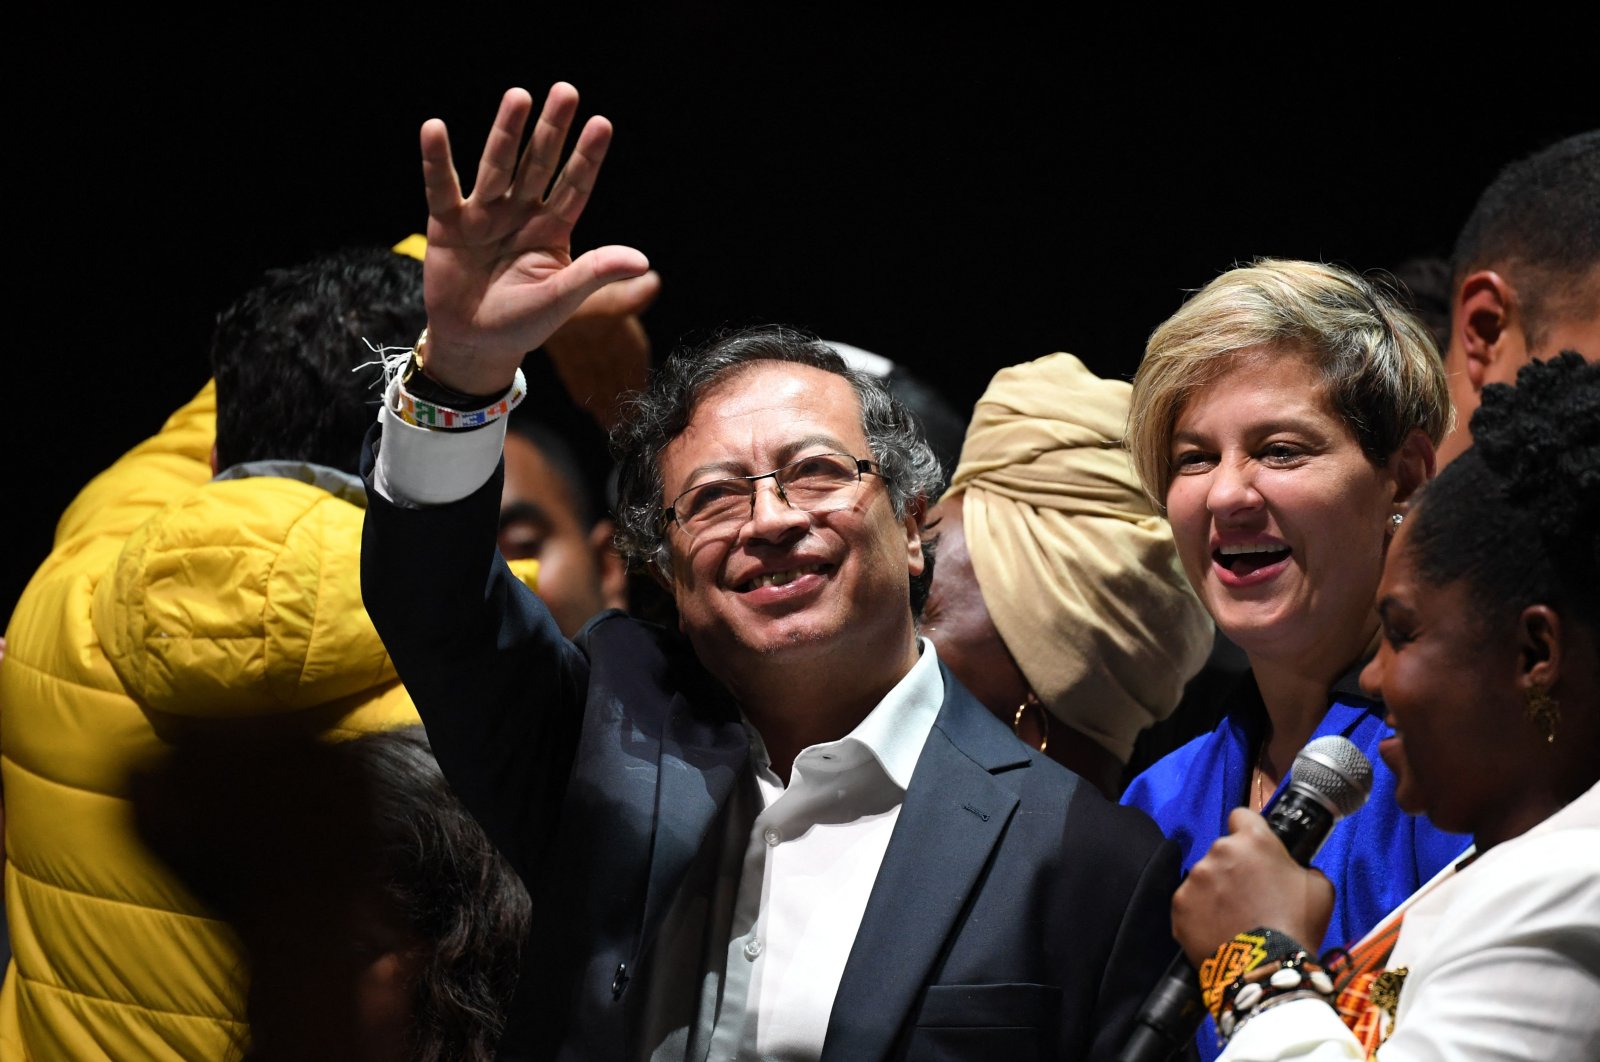 Presiden kiri pertama Kolombia, Petro, bersumpah untuk memerangi ketidaksetaraan